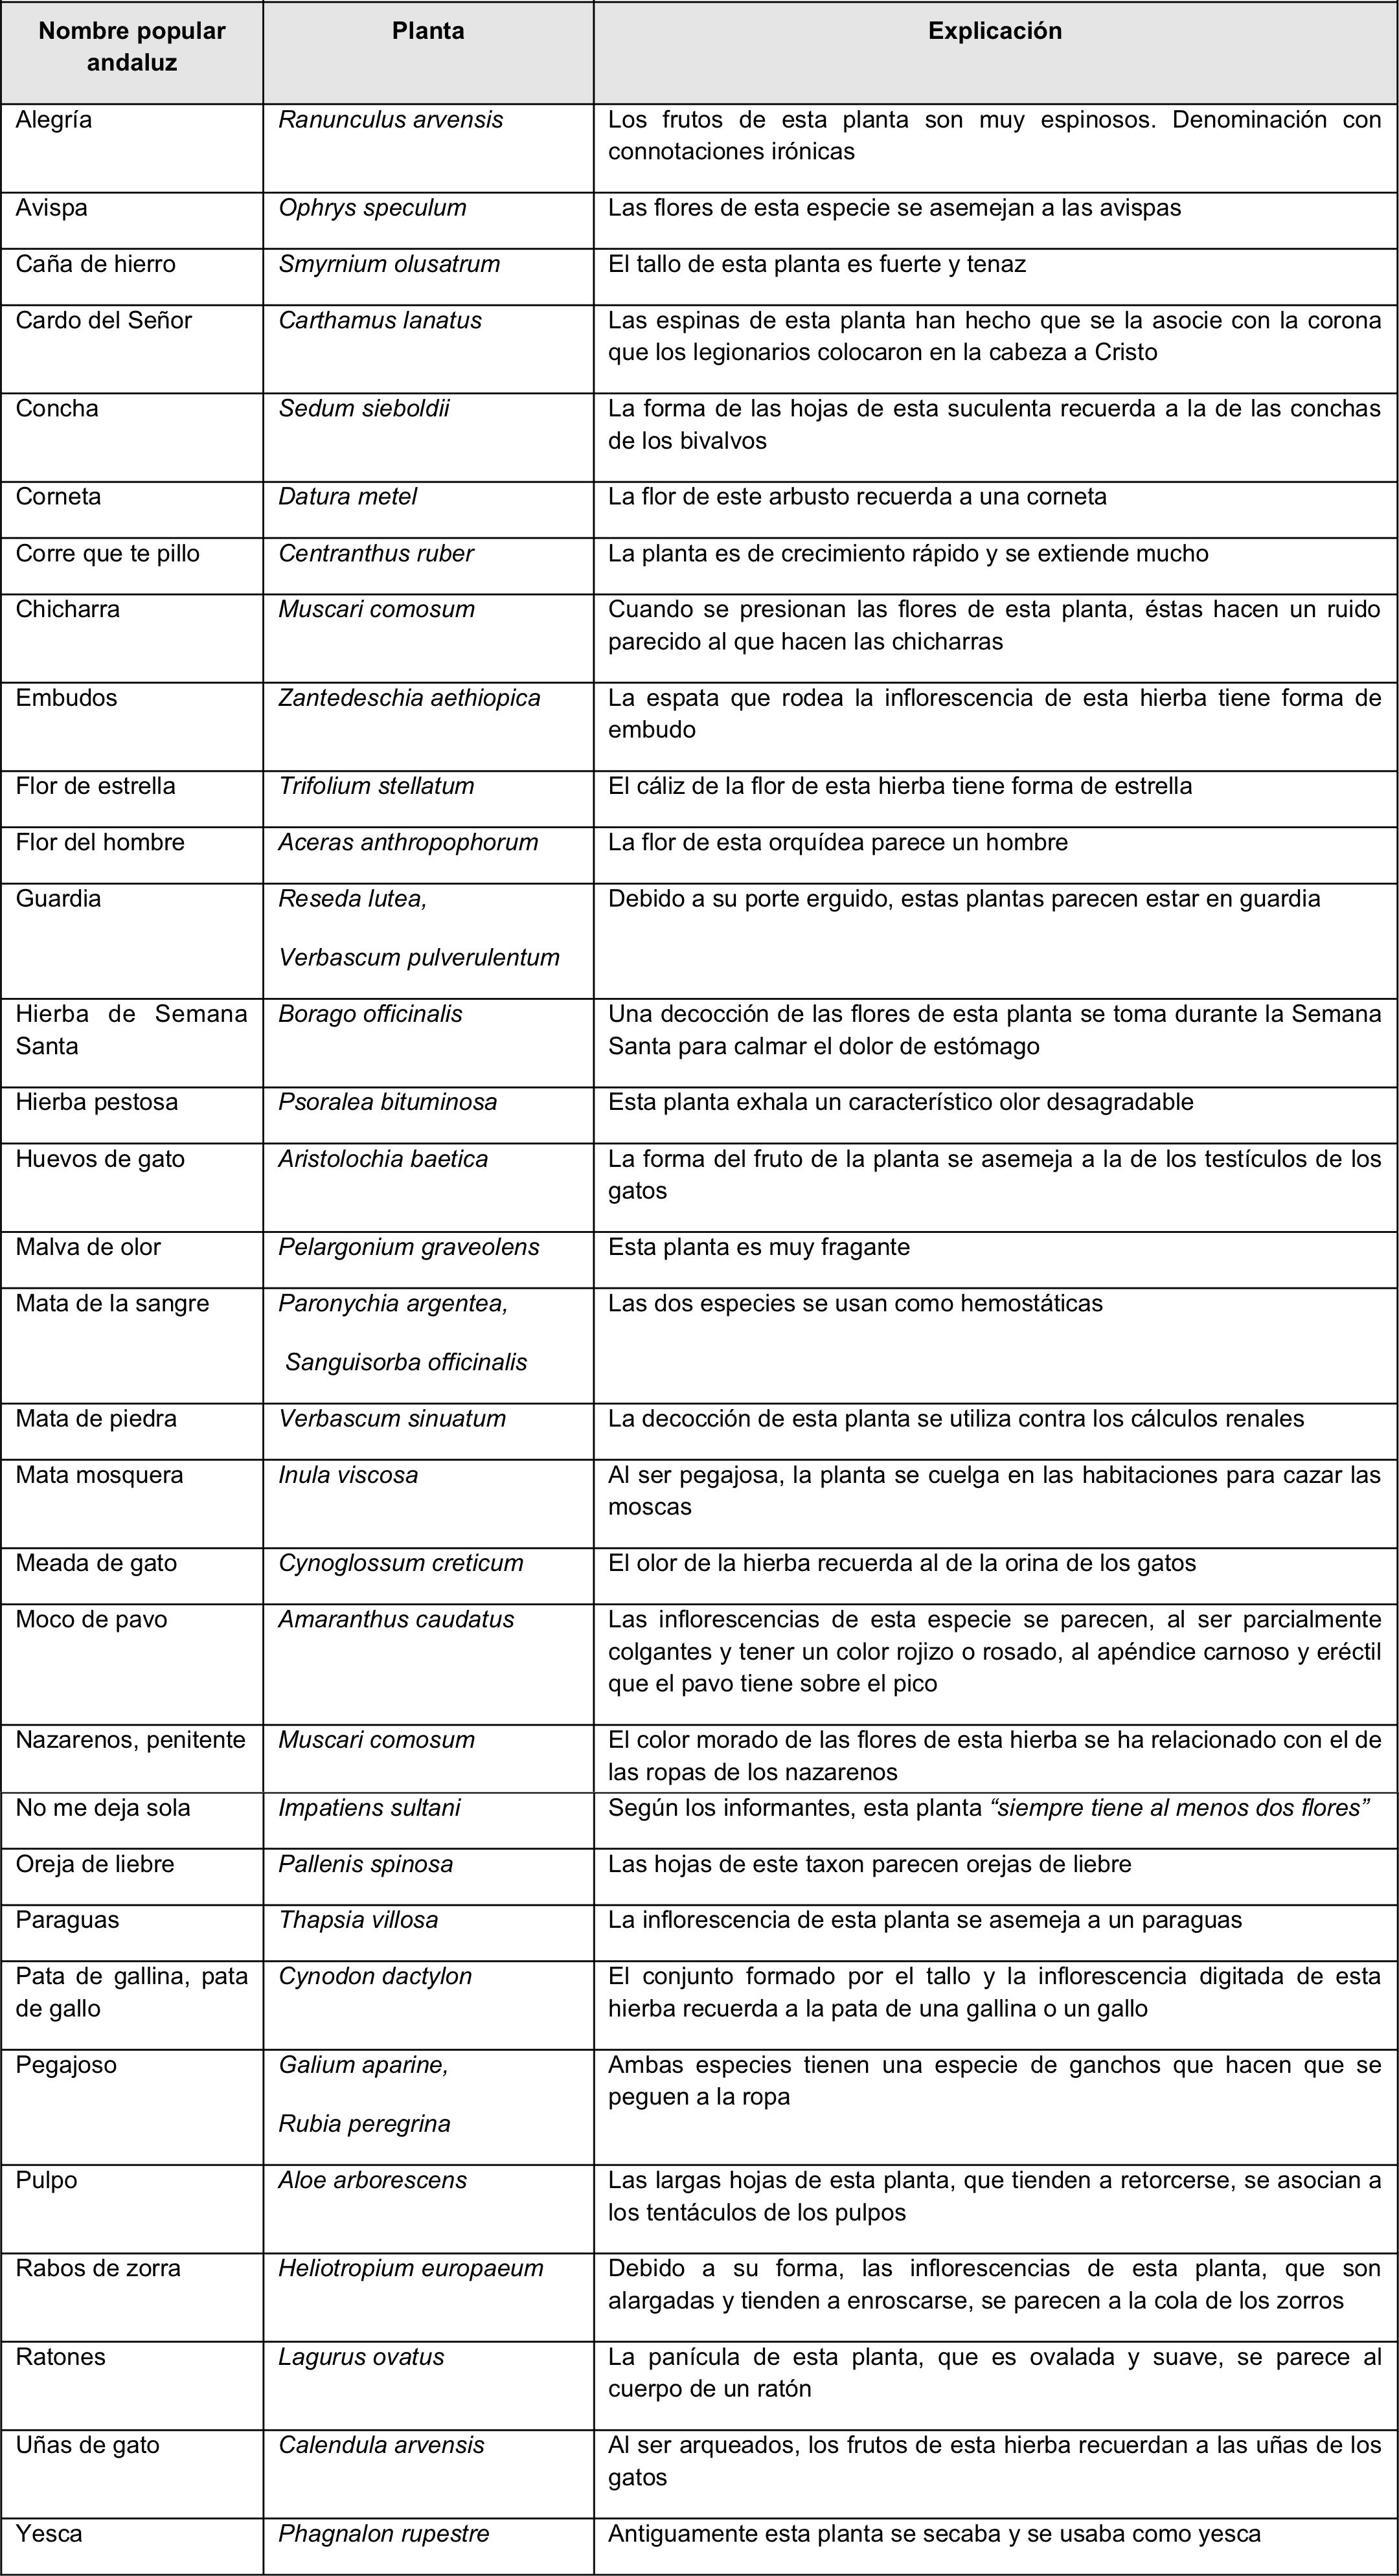 Algunos de los nombres populares de plantas andaluzas recogidos por Brøndegaard con sus correspondientes explicaciones (extraído de Álvarez, 2016).